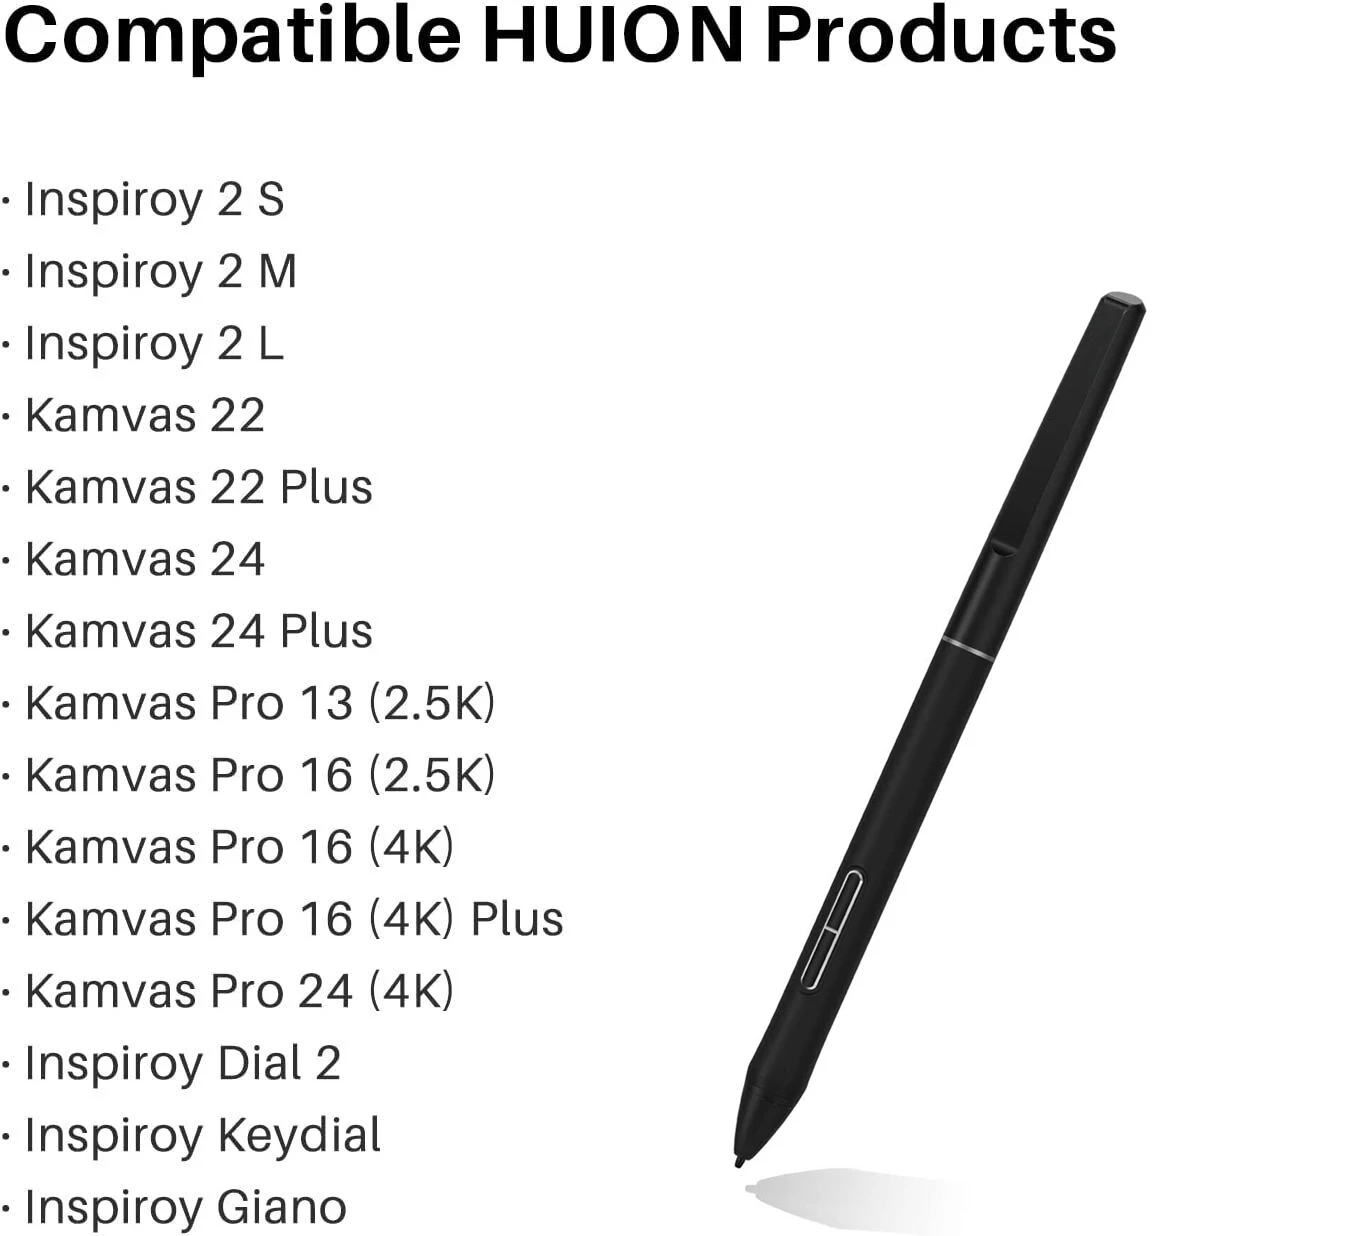 Для HUION Тонкая ручка PW550S диаметром 9,5 мм для Huion Inspiroy 2/Giano/Keydial/Dial 2, Kamvas 22 серии, Kamvas 24 серии,0